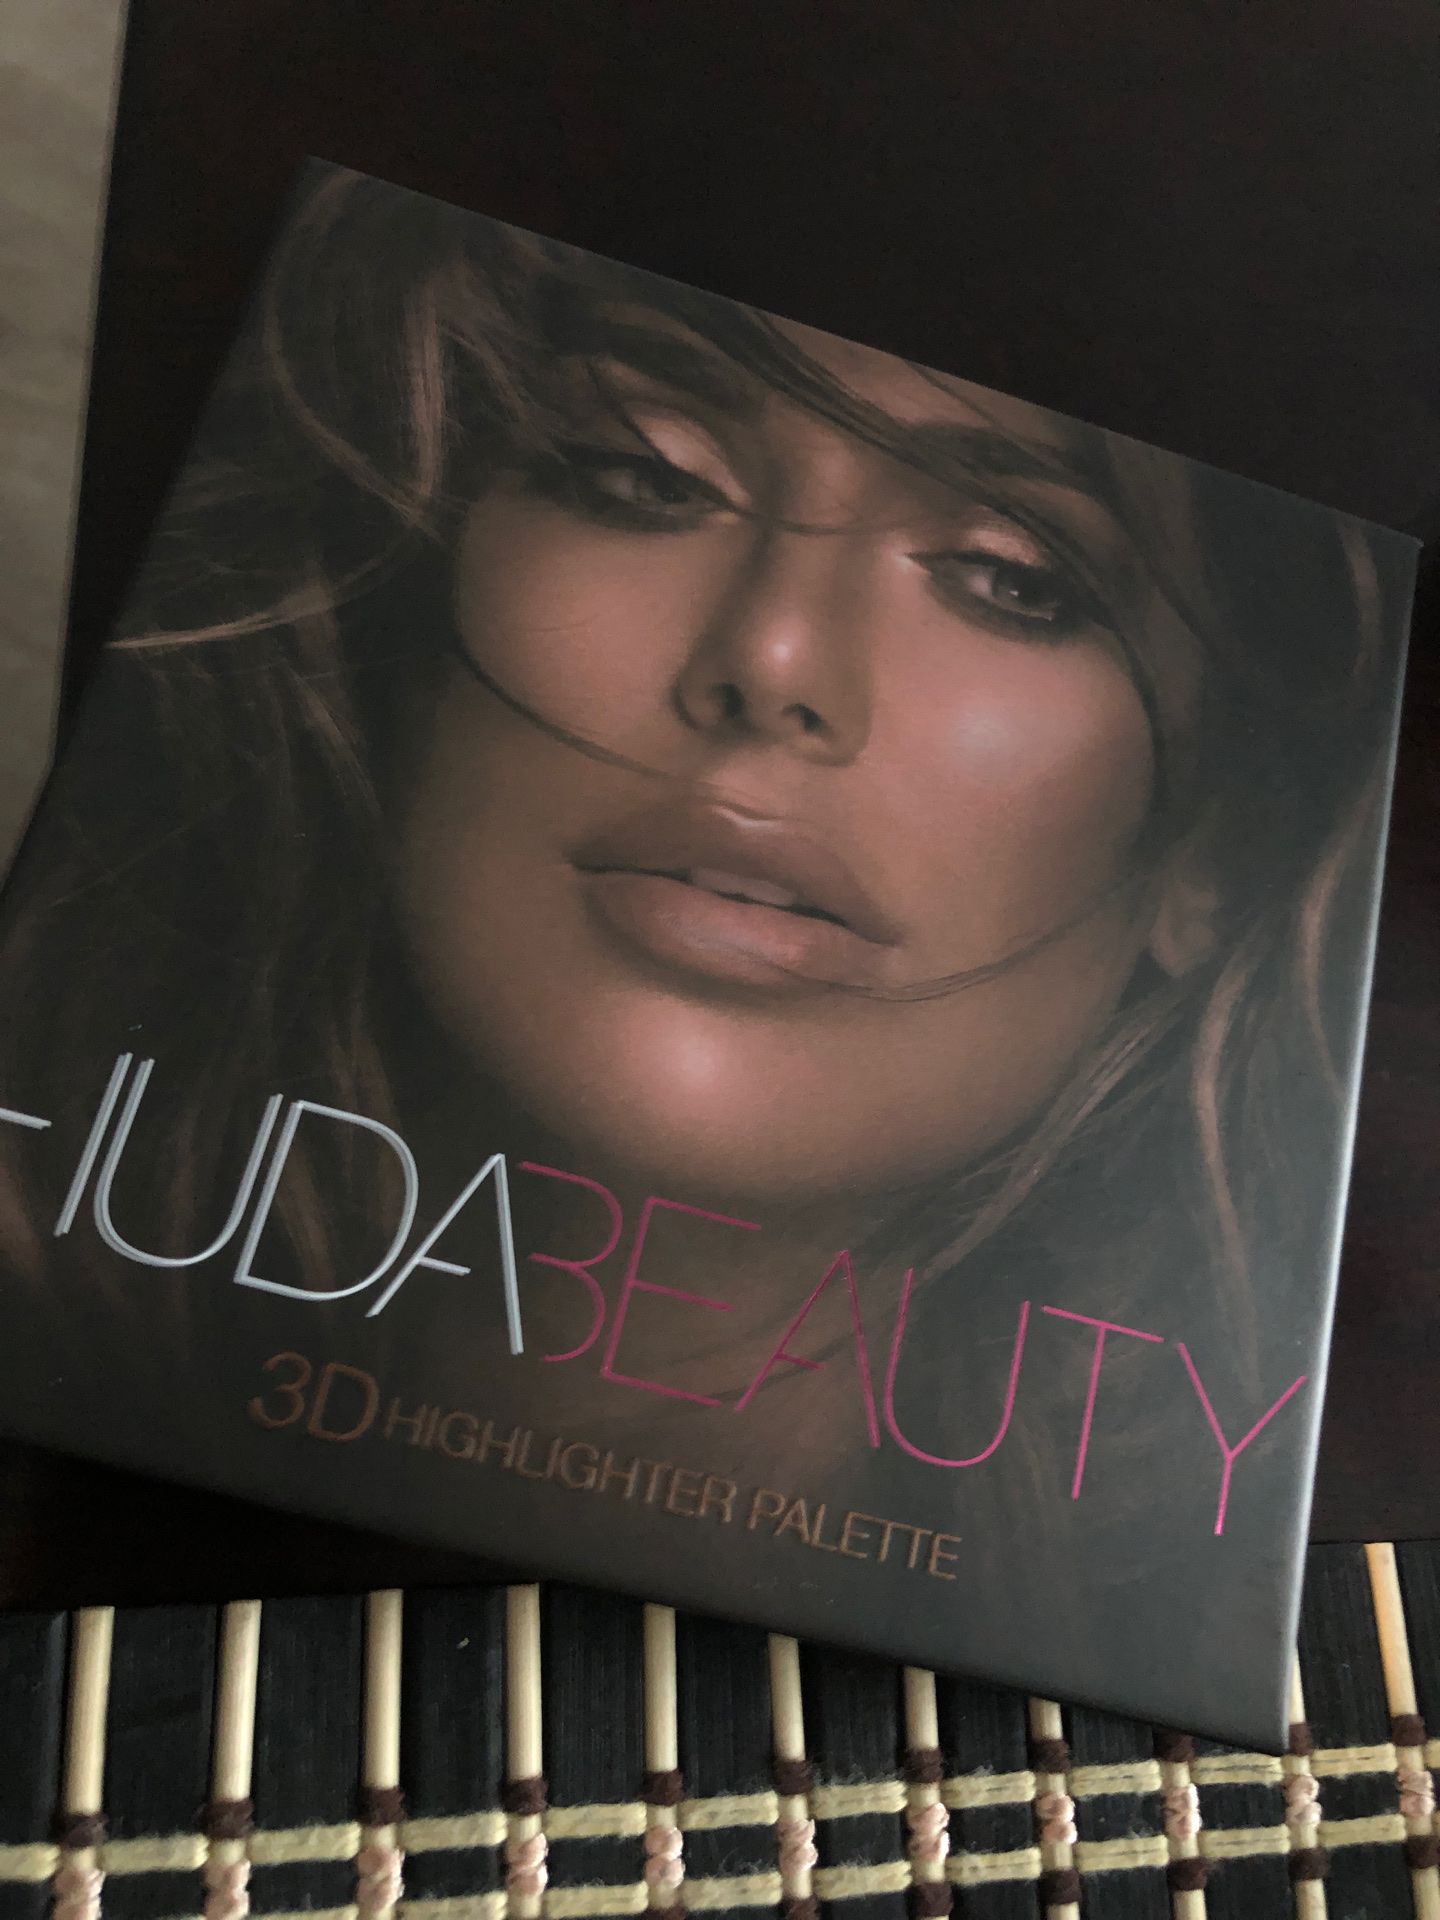 Huda Beauty 3D